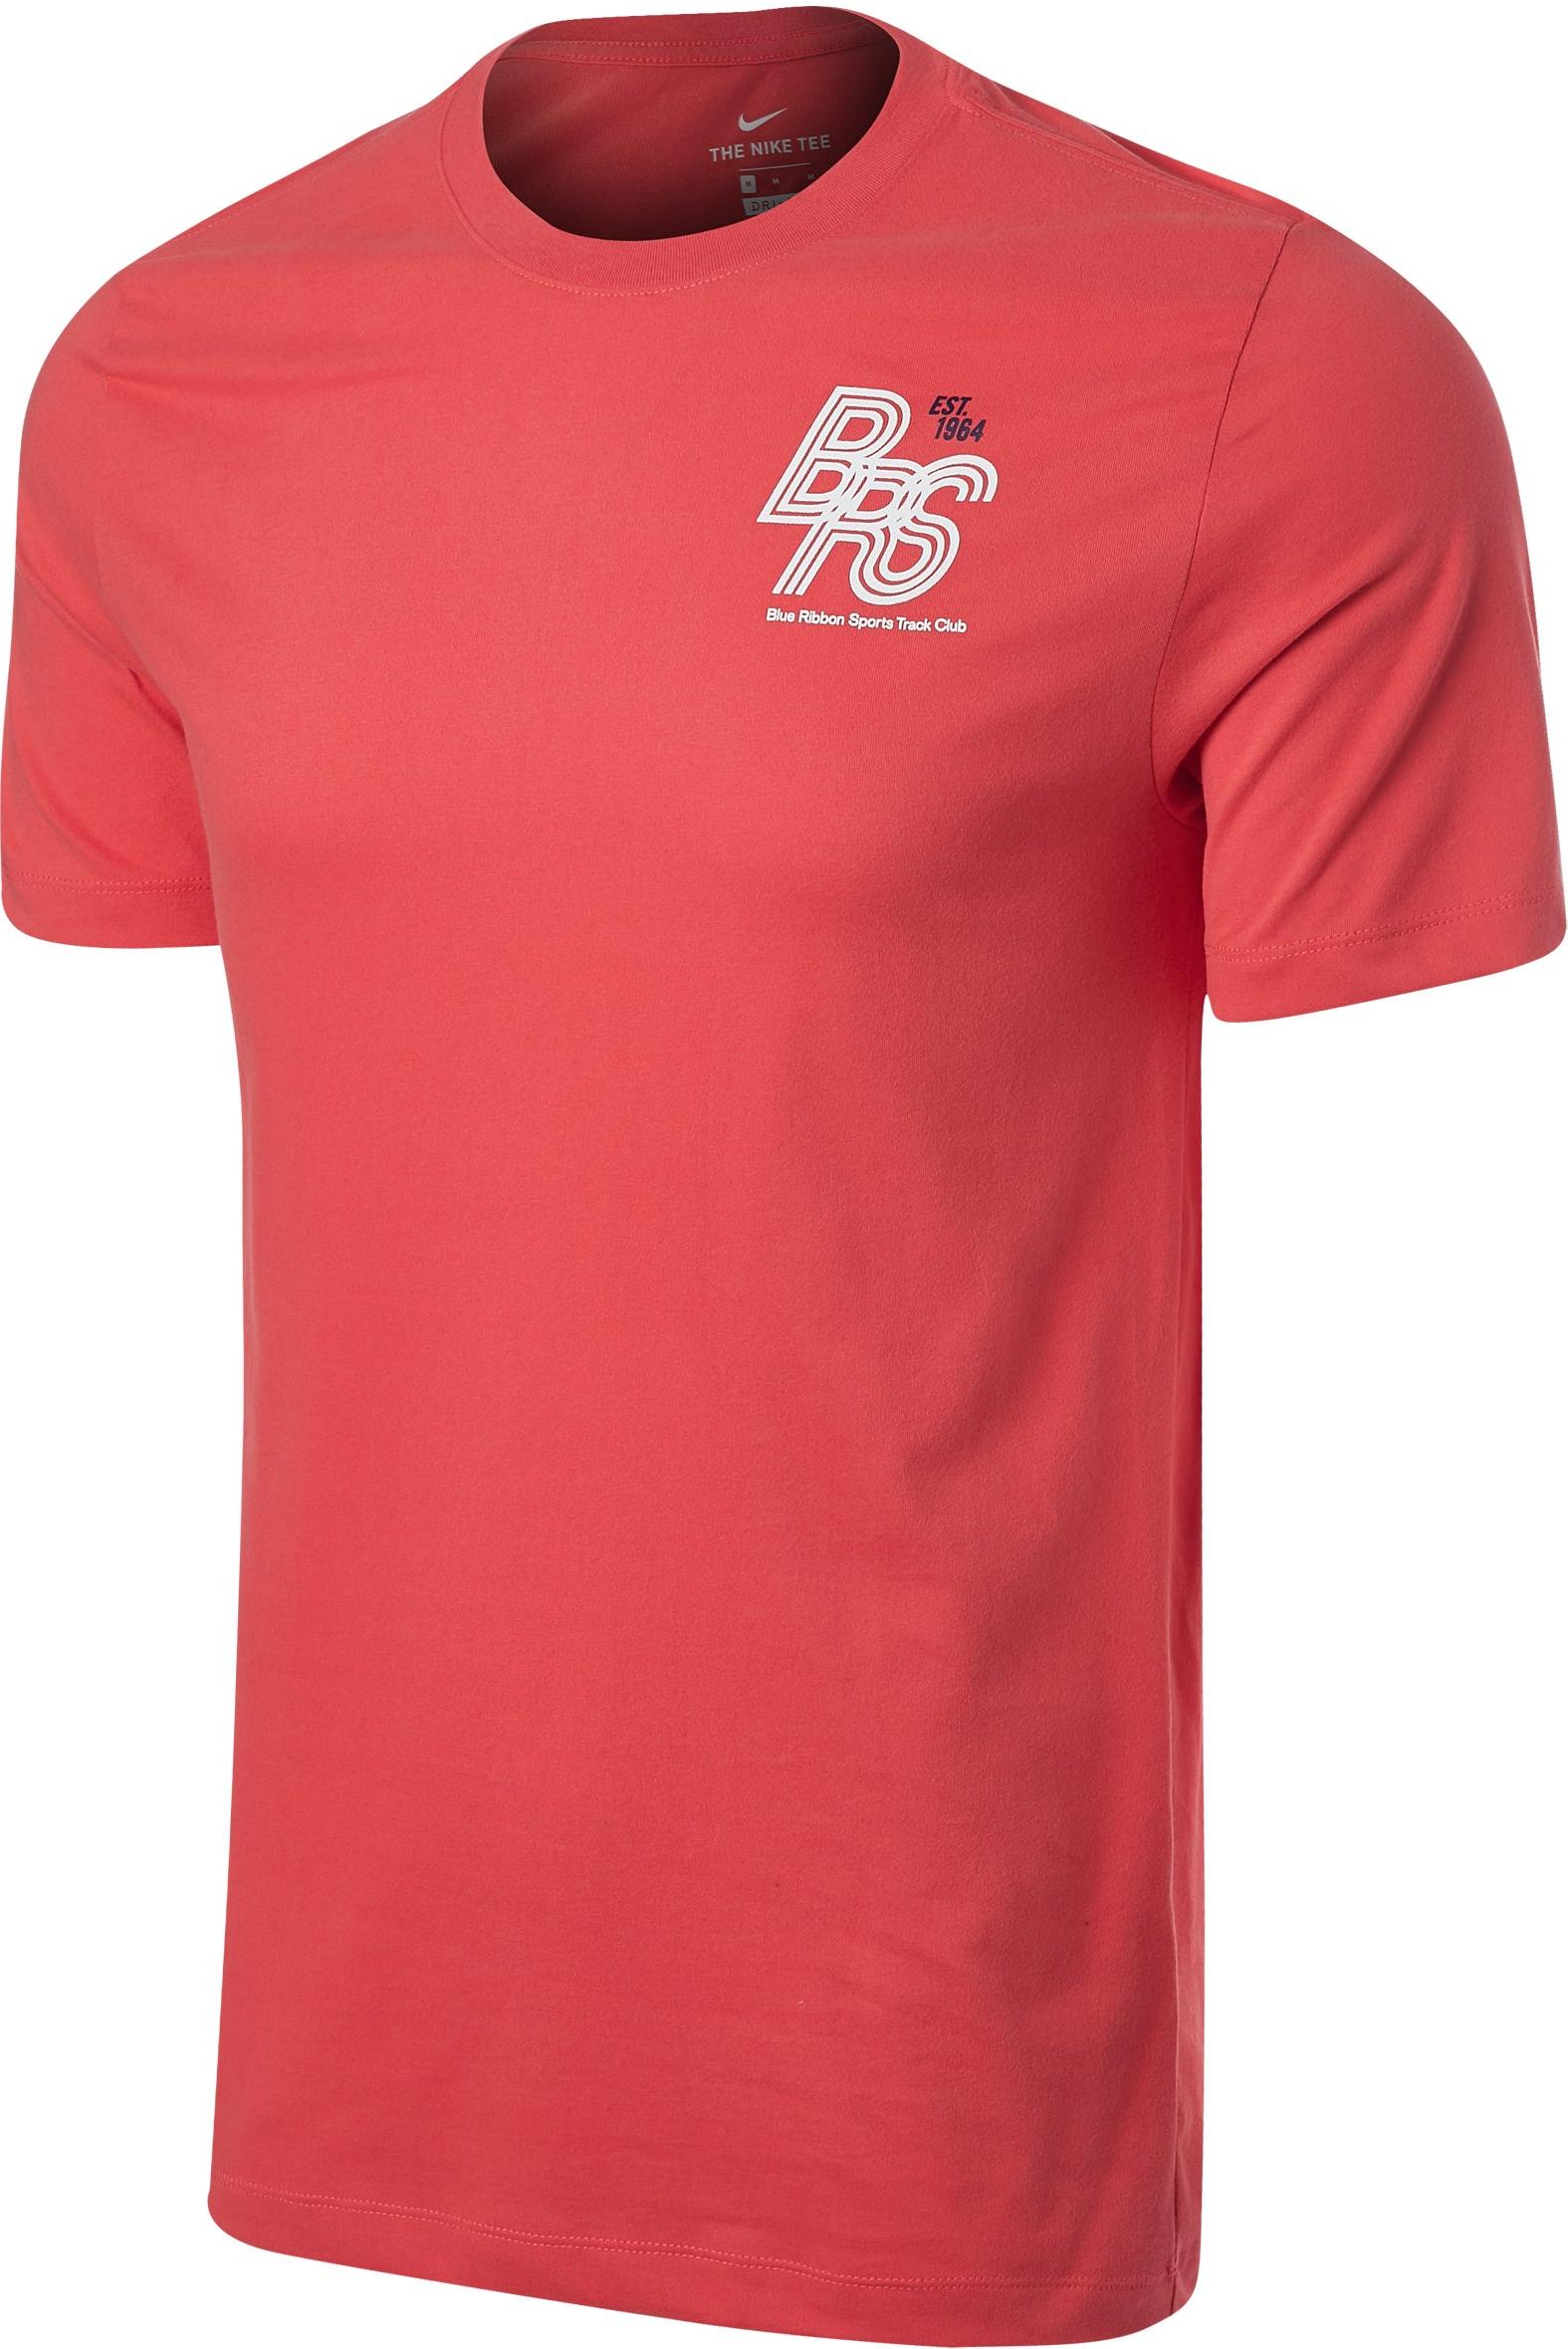 Pánské běžecké tričko s krátkým rukávem Nike Dri-FIT Blue Ribbon Sports